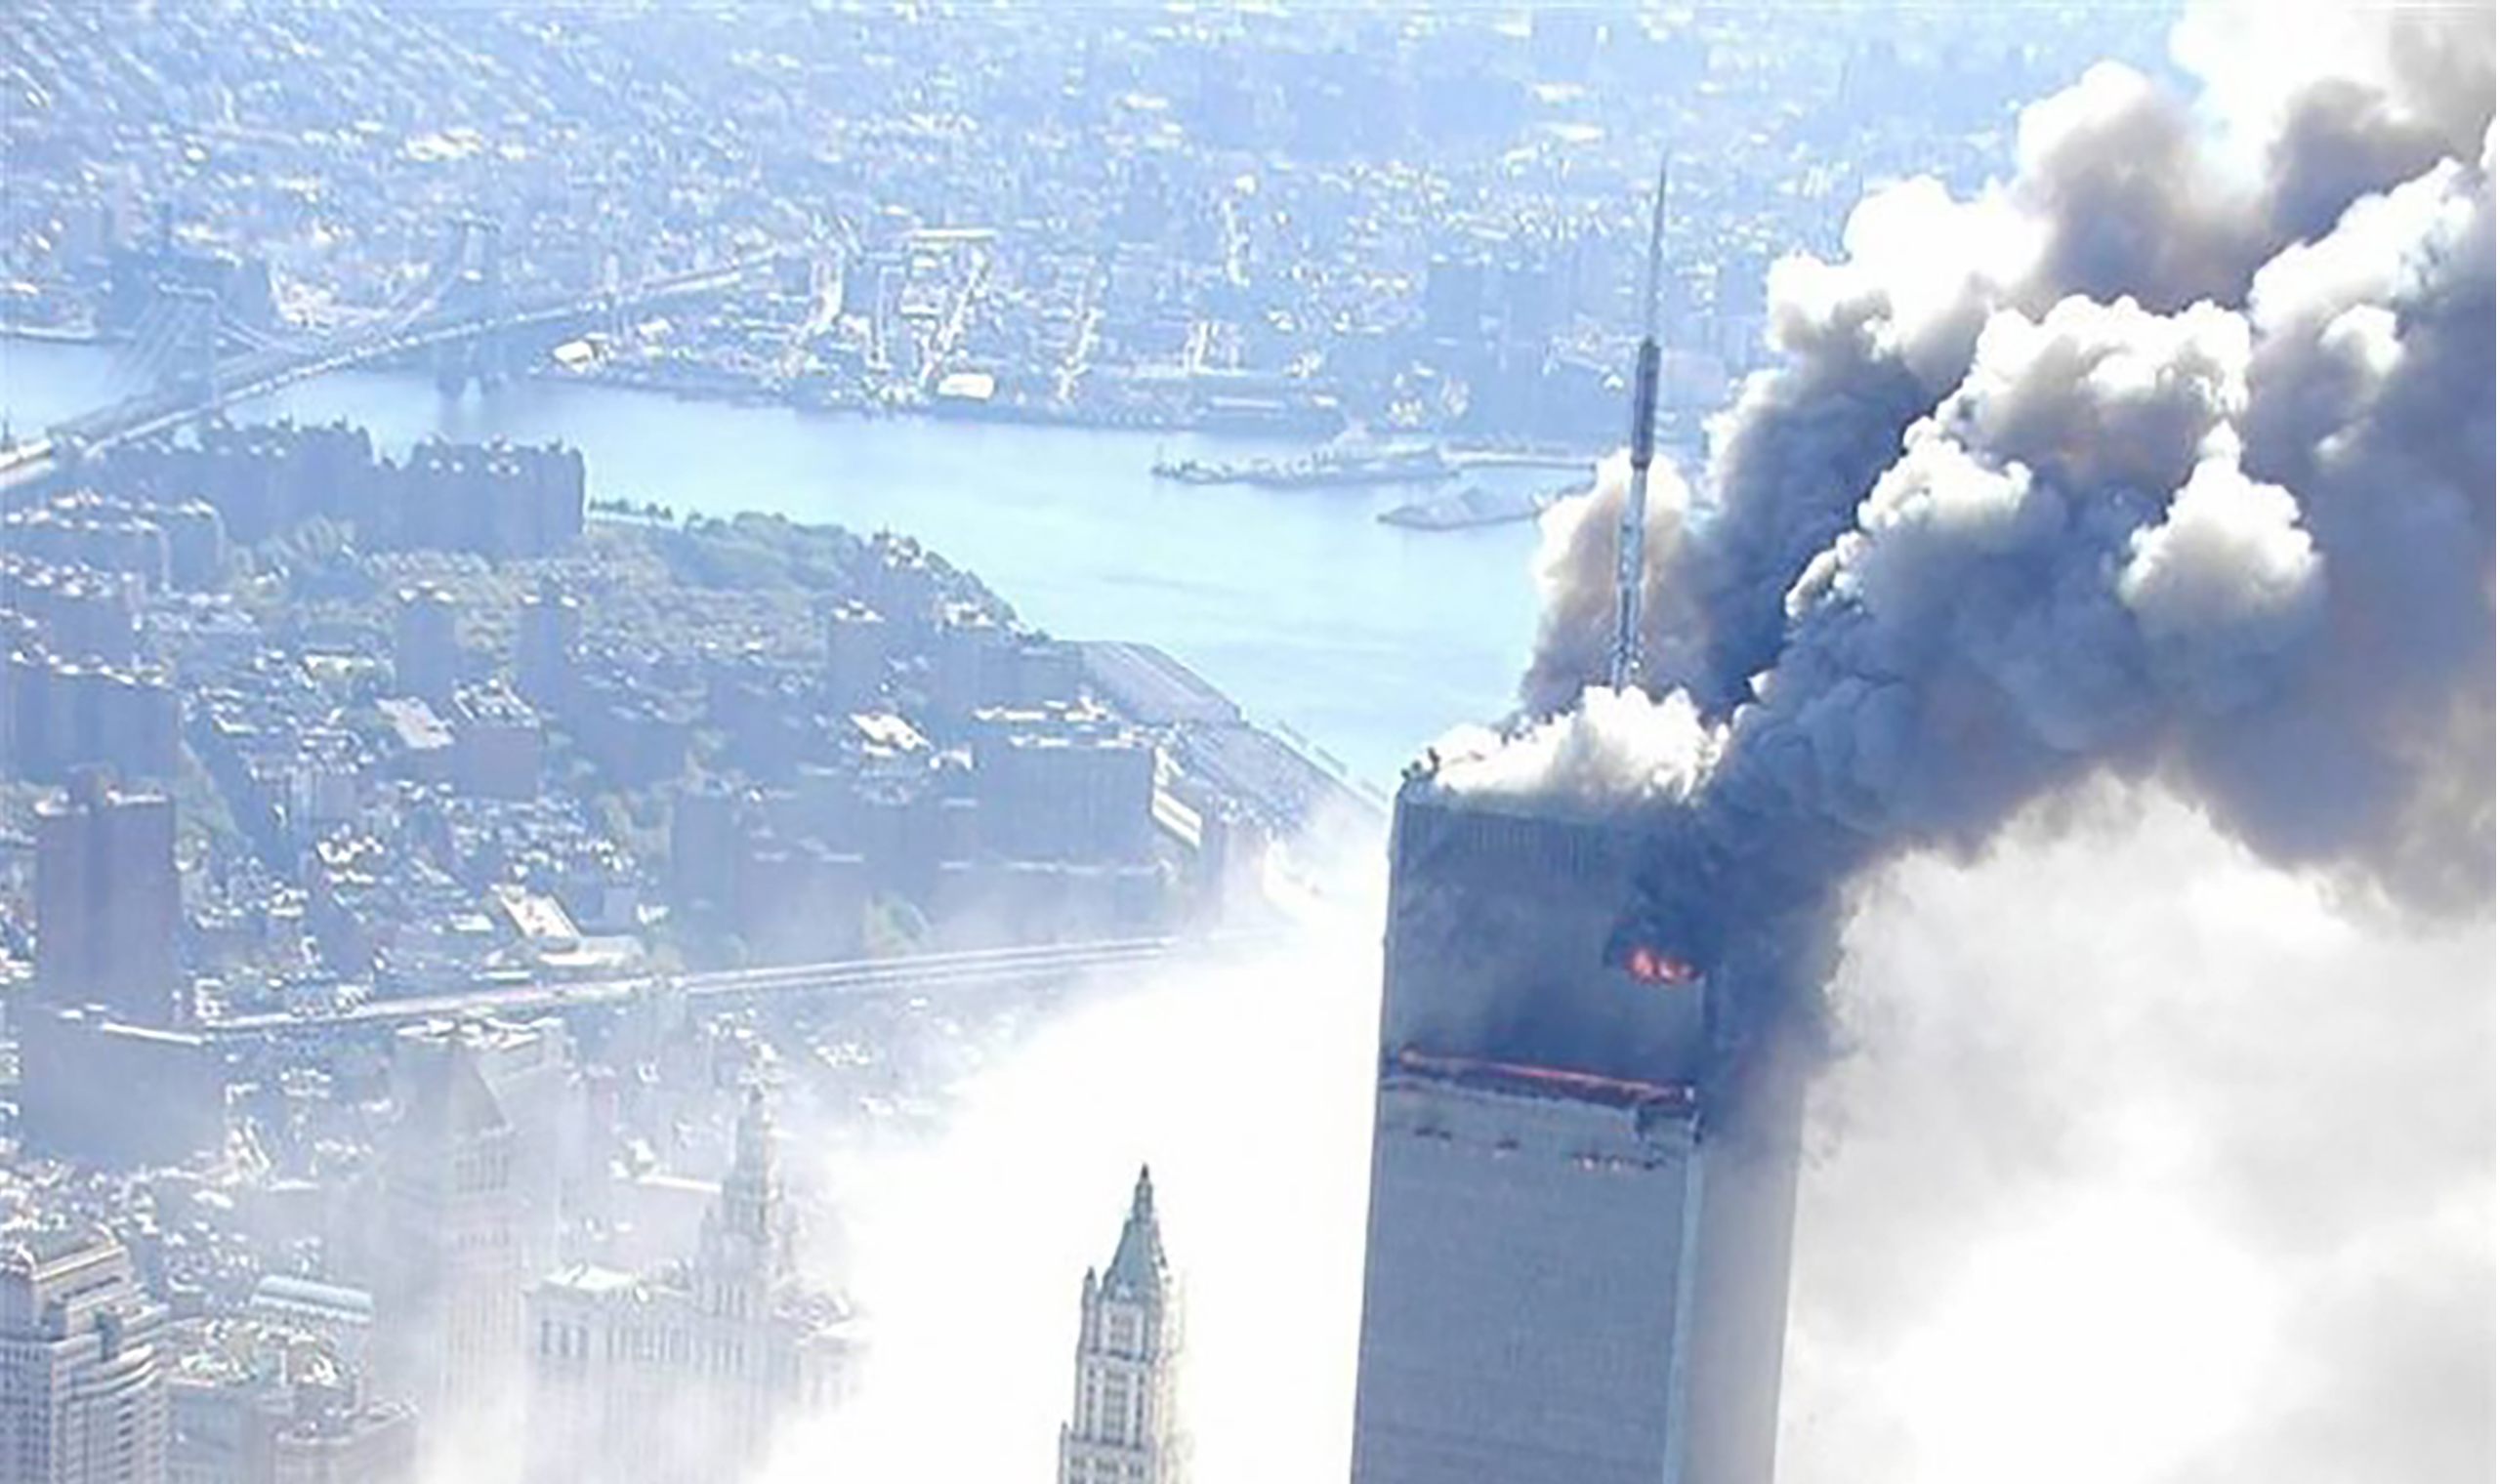 Нападение башен. Башни-Близнецы 11 сентября 2001. Аль Каида теракт 11 сентября. Теракт 11 сентября 2001 года башни Близнецы. 11 Сентября 2001 башни Близнецы самолет.